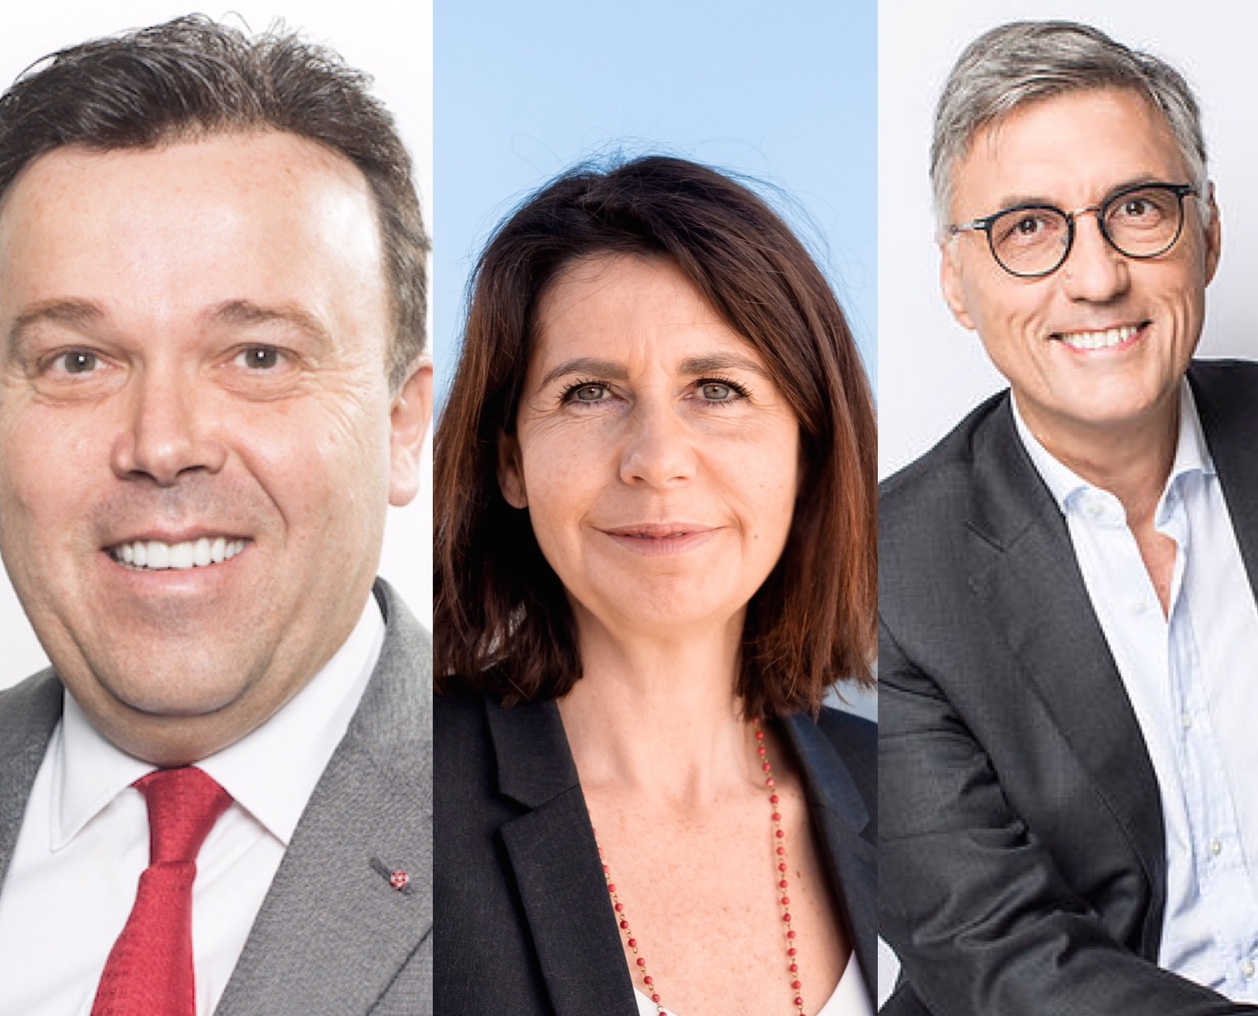 Elezioni nazionali monegasche - nella foto da sinistra: Stéphane Valeri (Primo! - Priorité Monaco); Béatrice Fresko-Rolfo (Horizon Monaco), Jean-Louis Grinda (Union Monégasque).